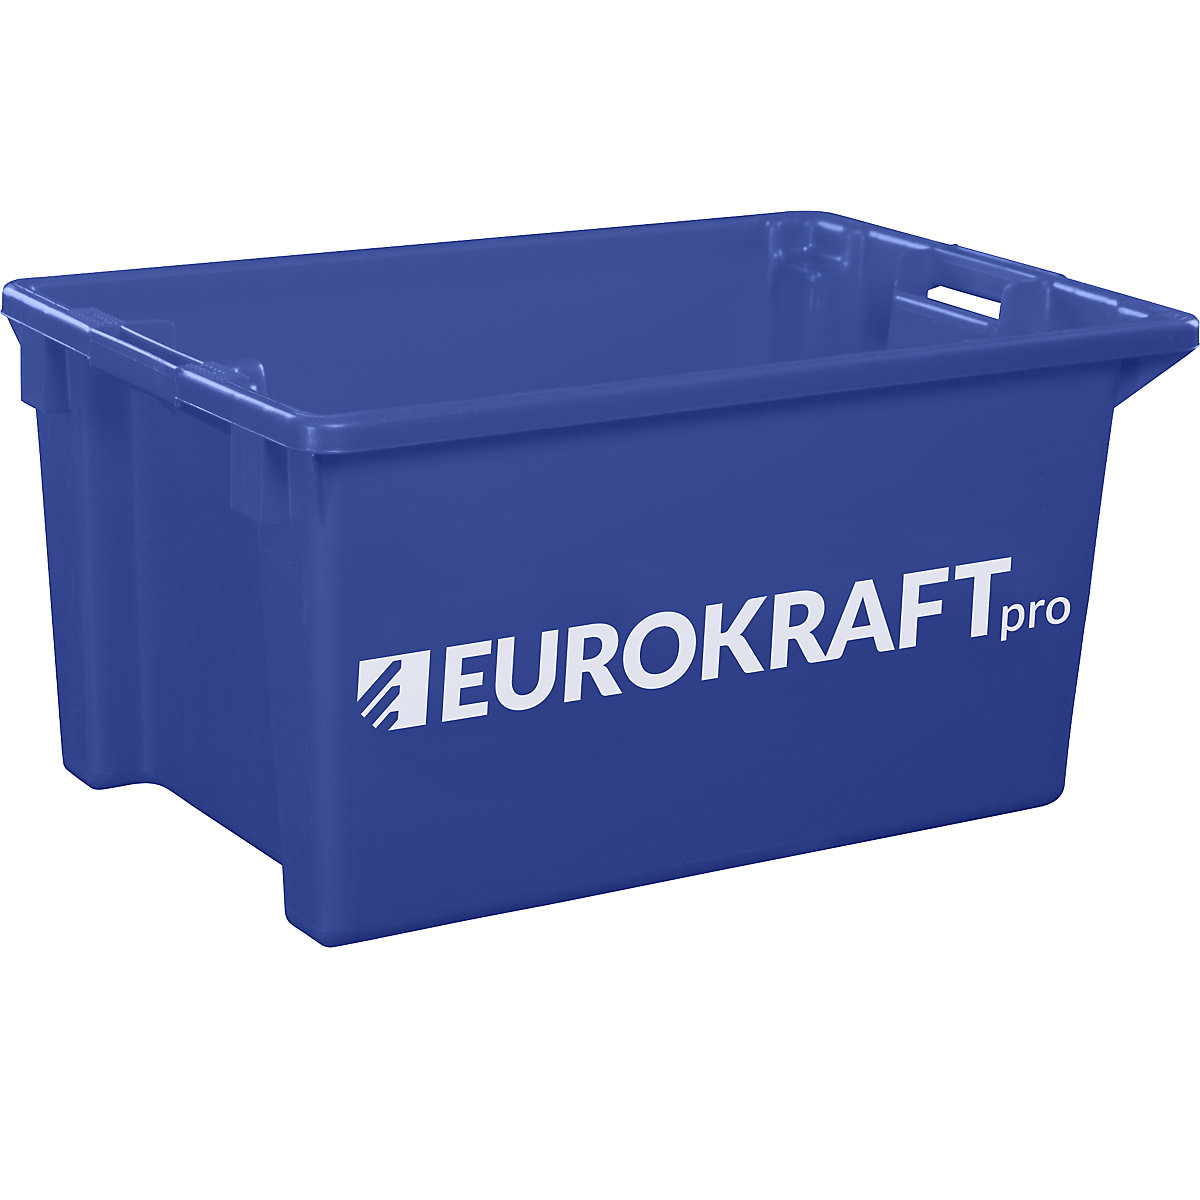 Drehstapelbehälter aus lebensmittelechtem Polypropylen eurokraft pro, Inhalt 70 Liter, VE 2 Stk, Wände und Boden geschlossen, blau